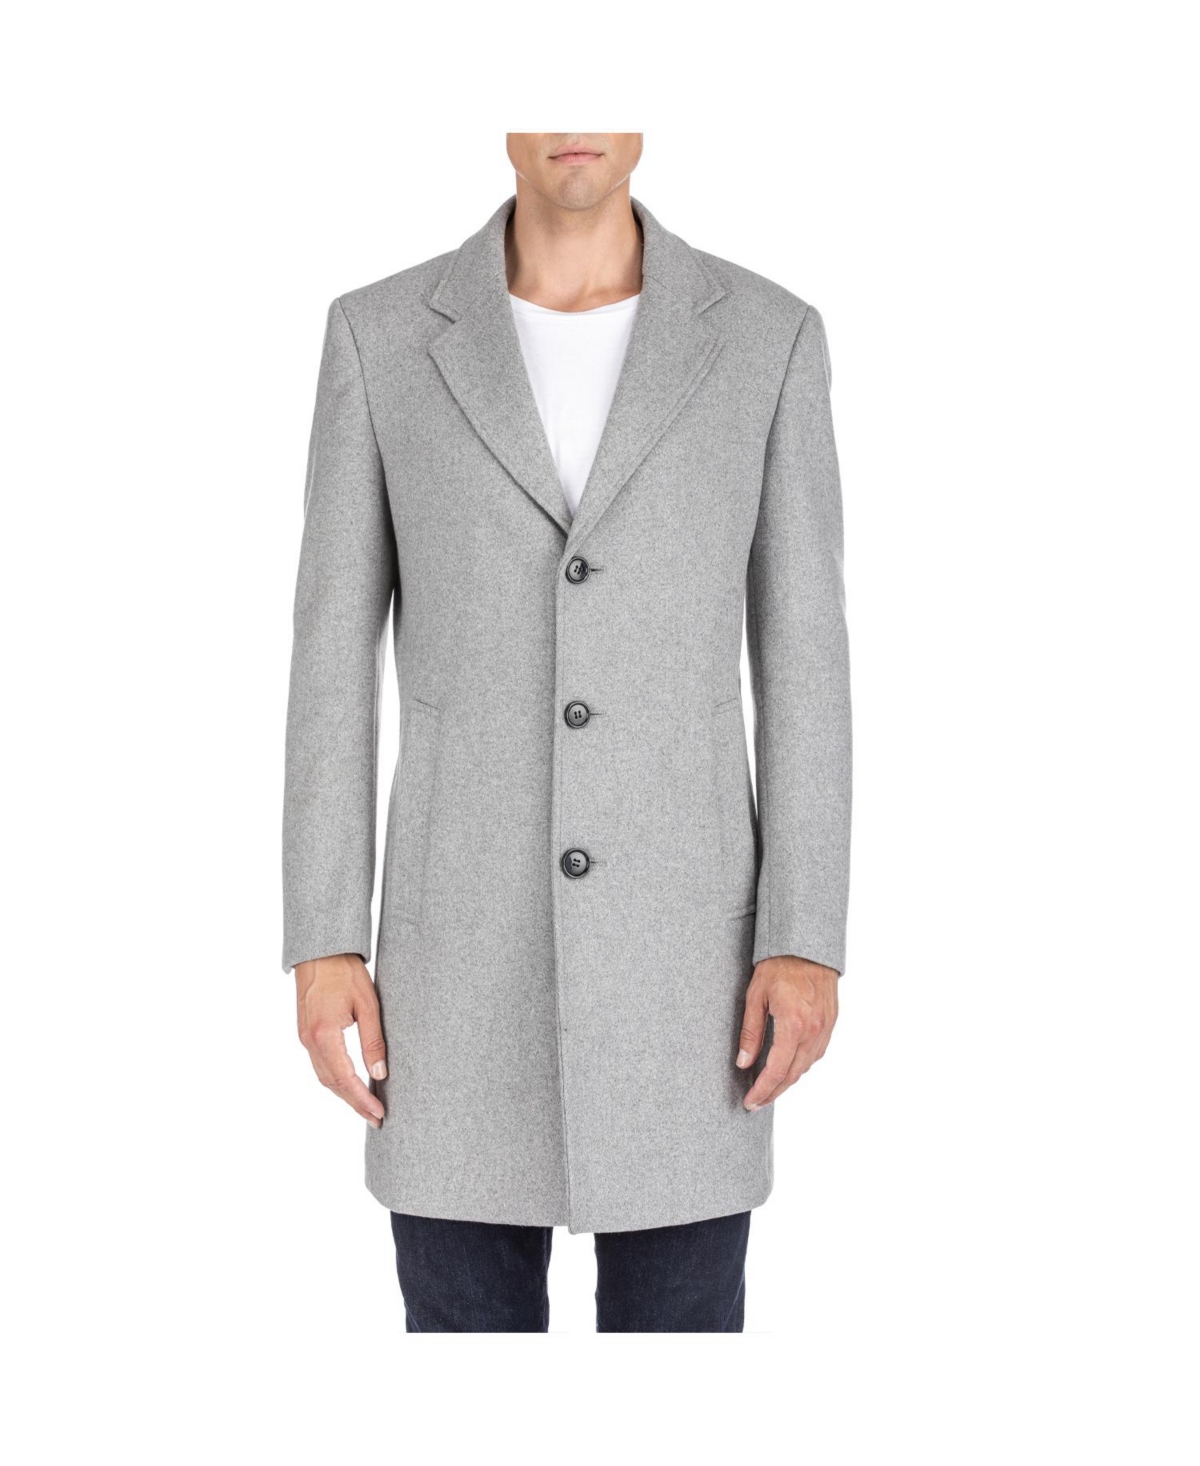 Men's Tailored Wool Blend Notch Collar Wool Blend Walker Car Coat - Light grey